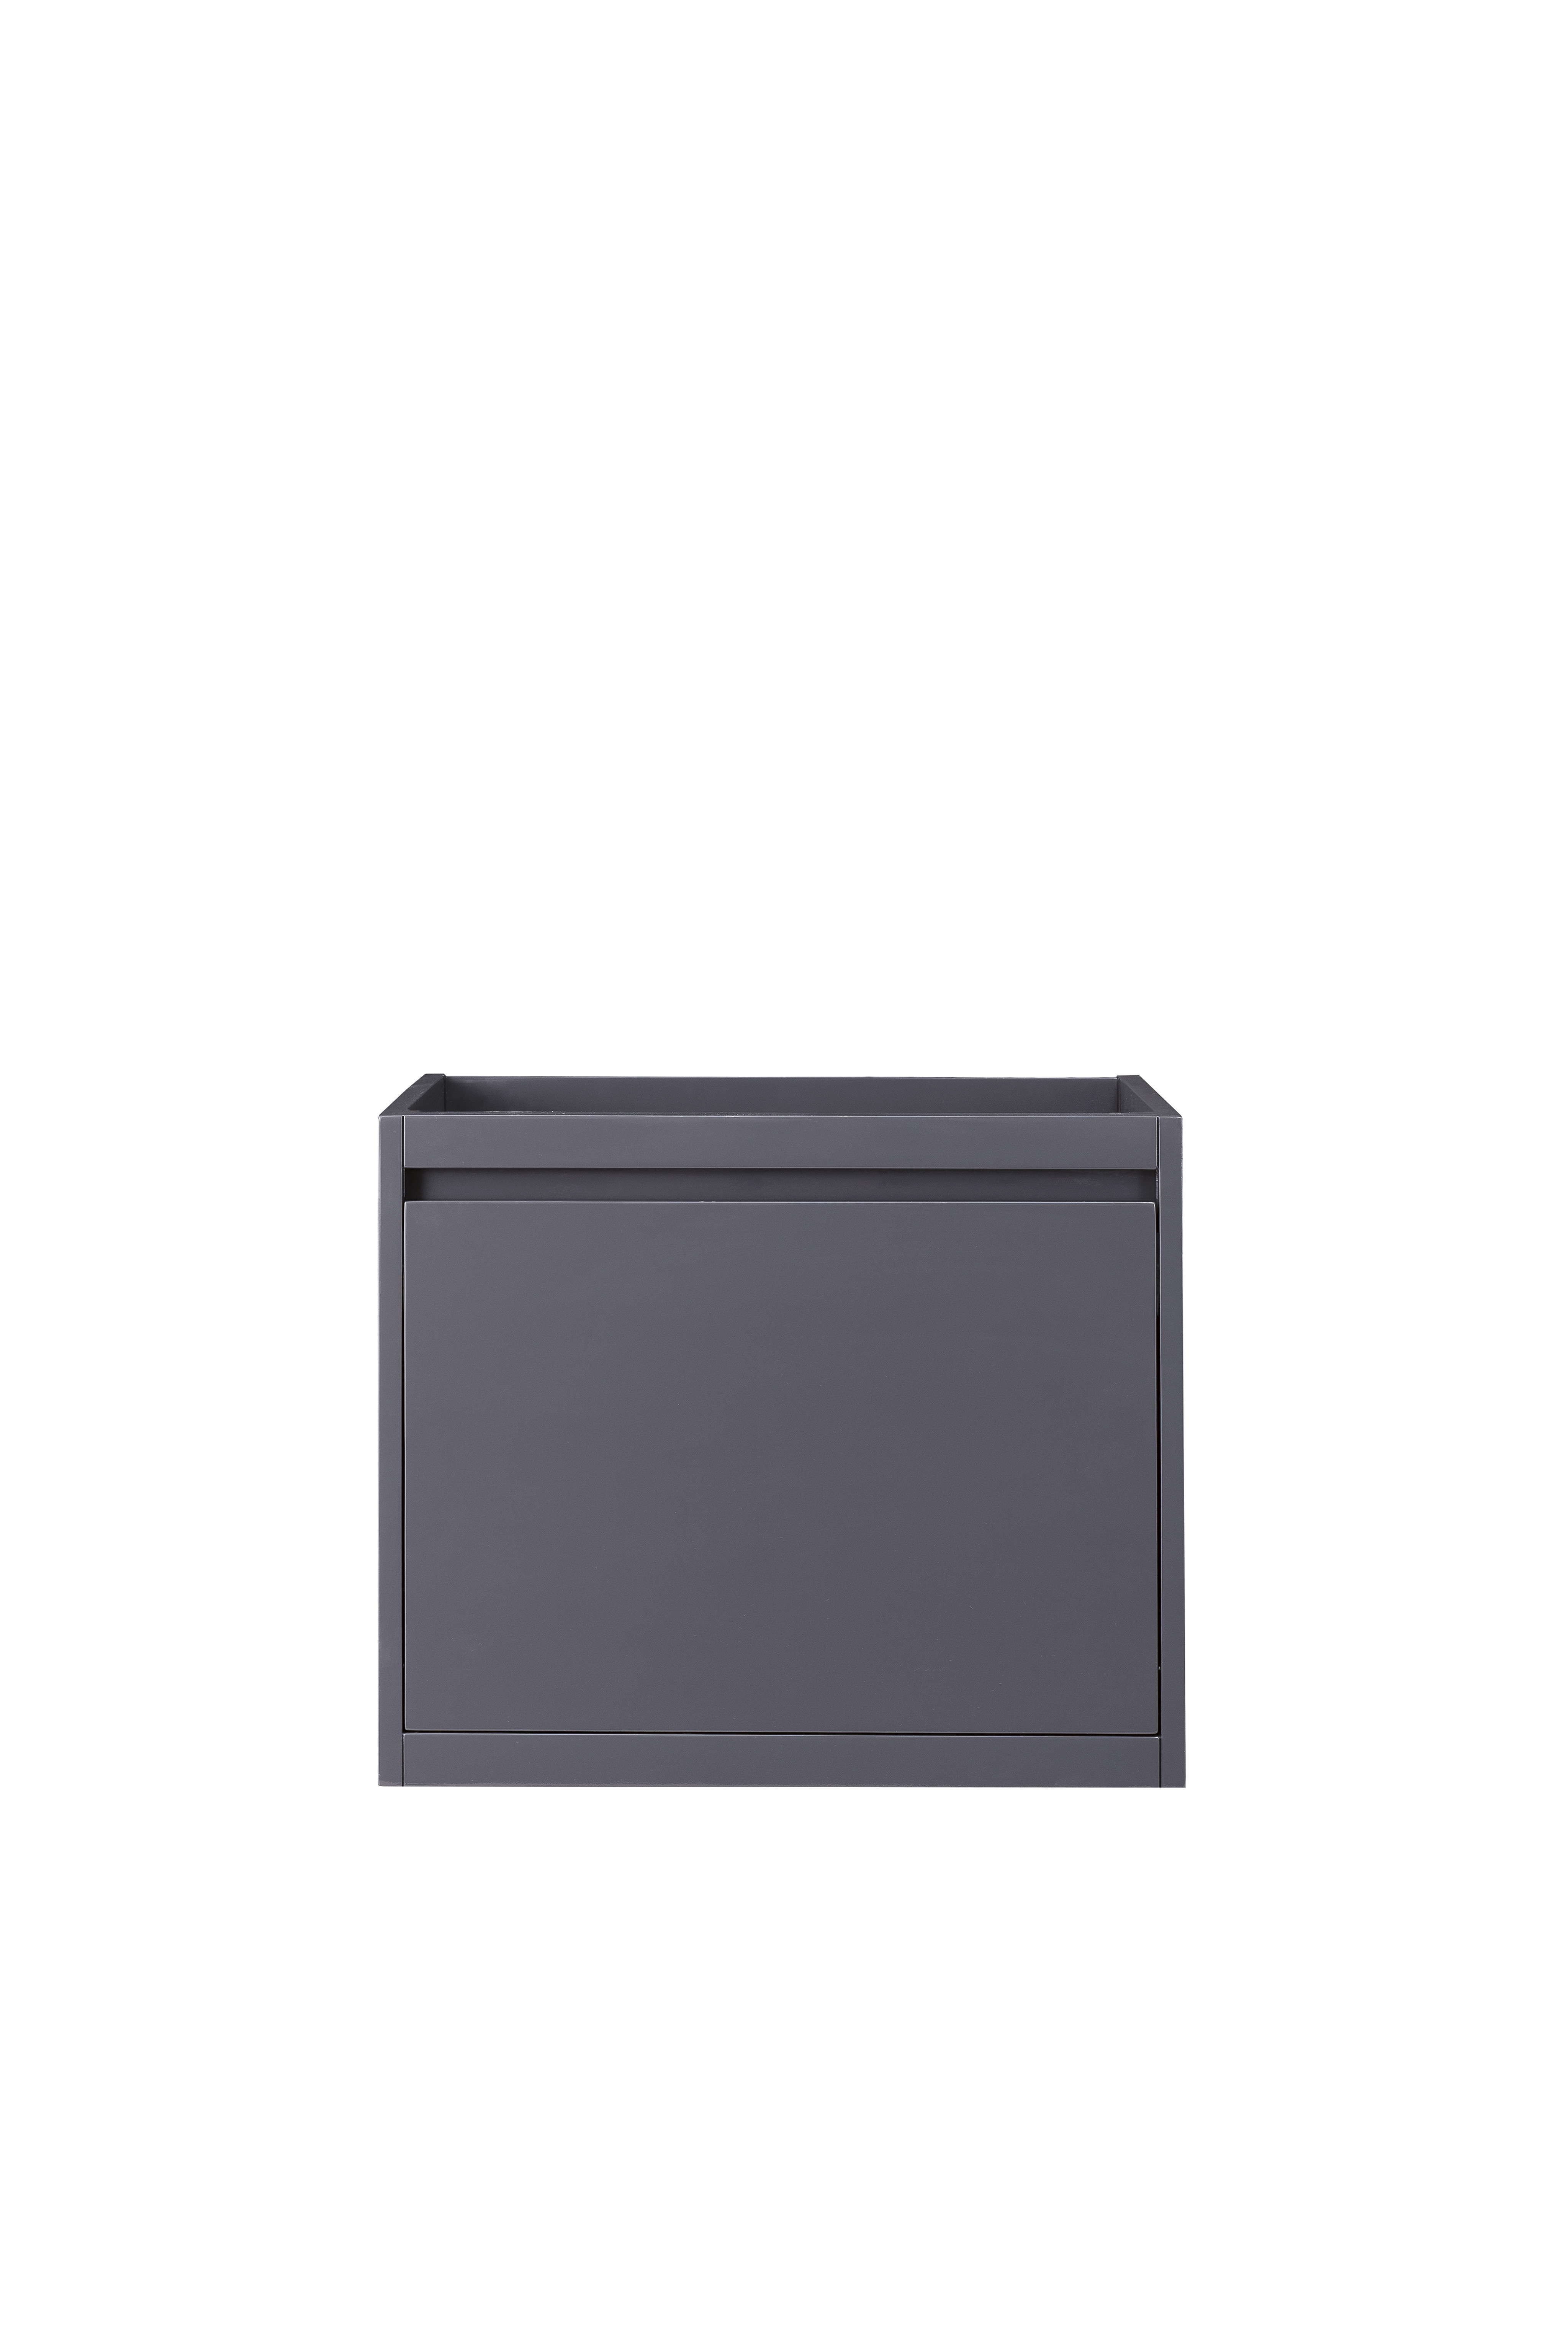 James Martin 801-V23.6-MGG Milan 23.6" Single Vanity Cabinet, Modern Grey Glossy - Click Image to Close